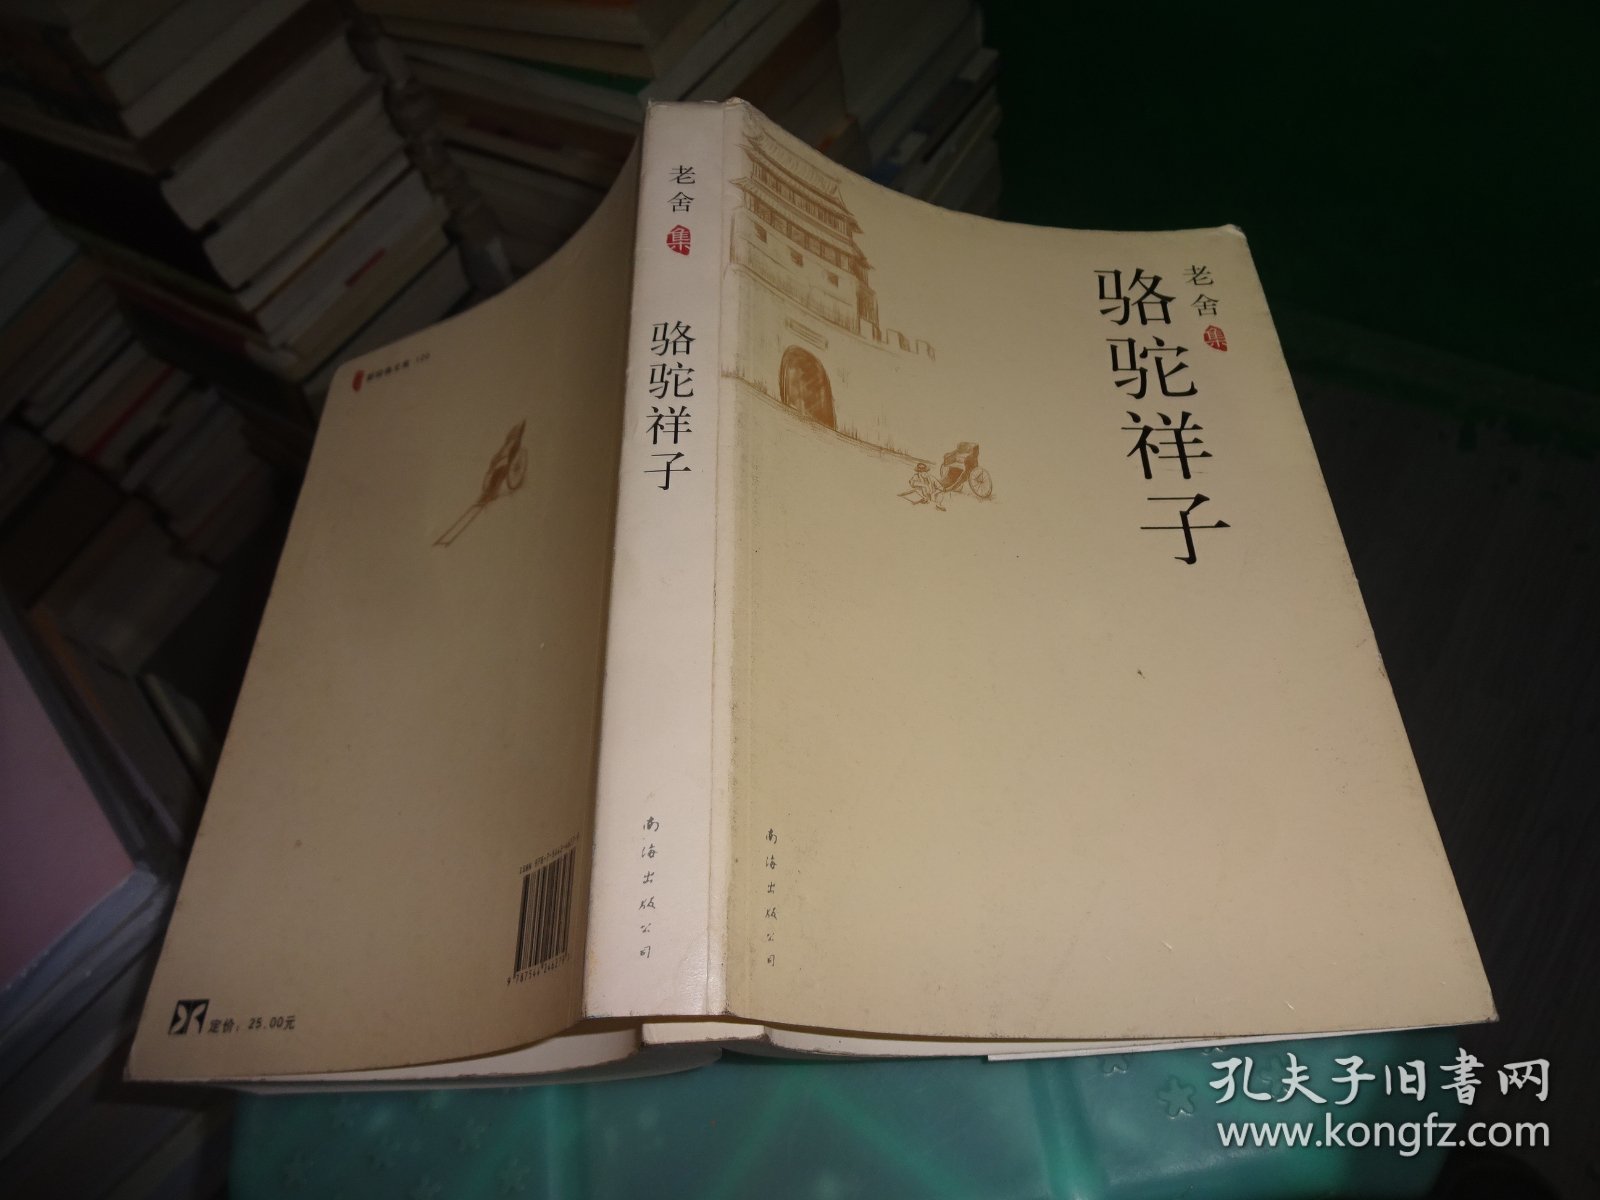 骆驼祥子 南海出版社  实物图 货号81-8